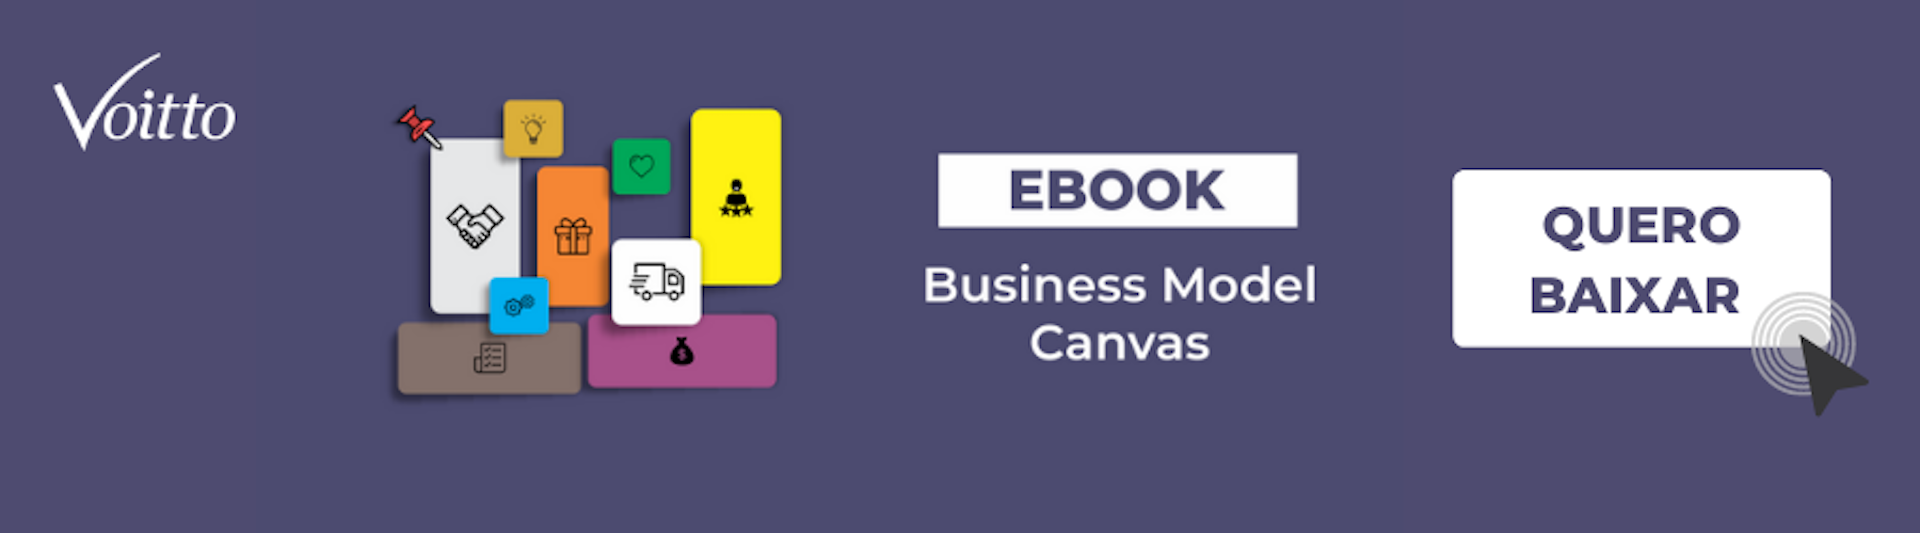 E-book Business Model Canvas